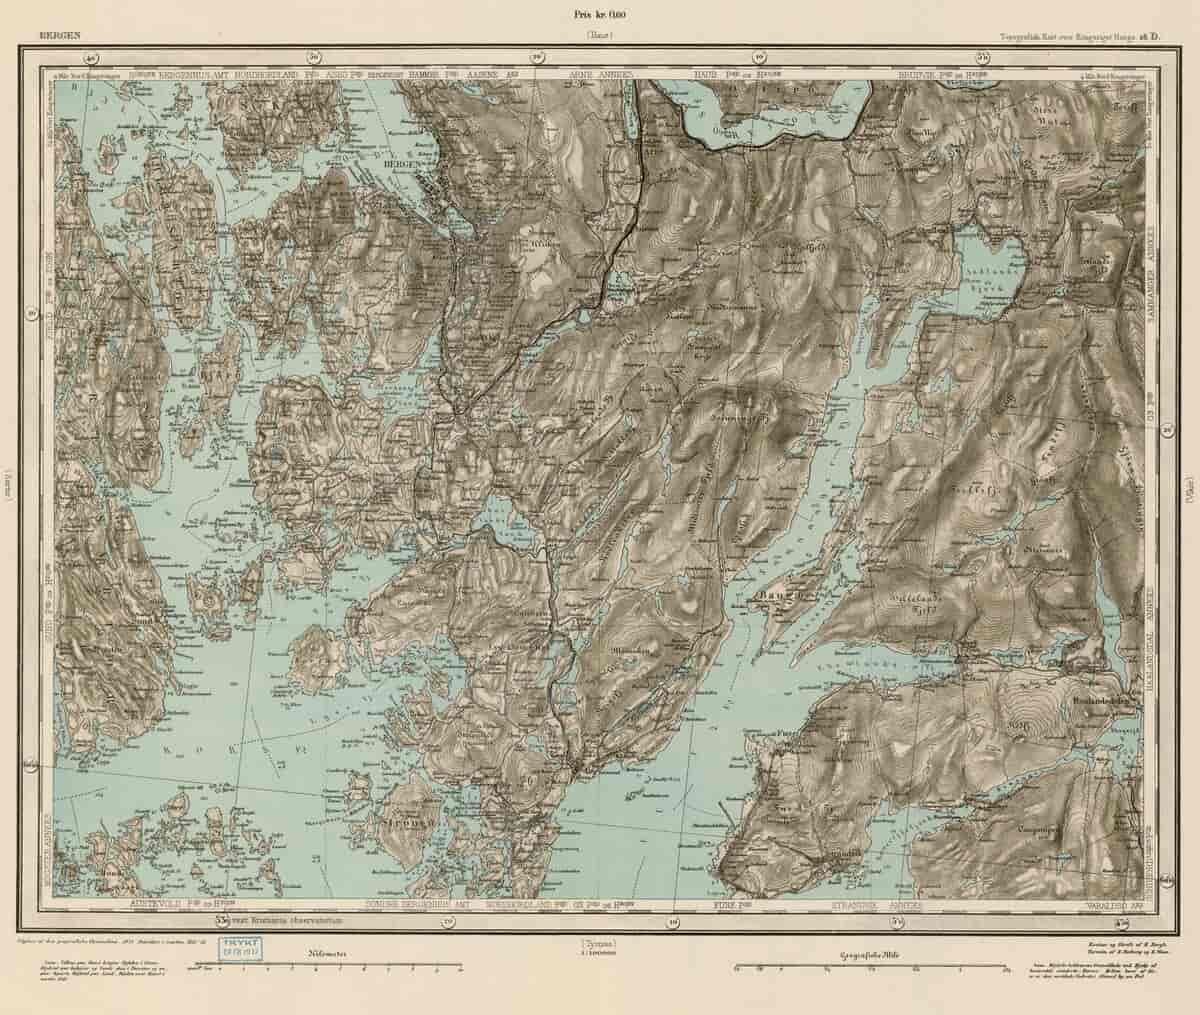 Rektangelkart for Bergen og omegn, 1912